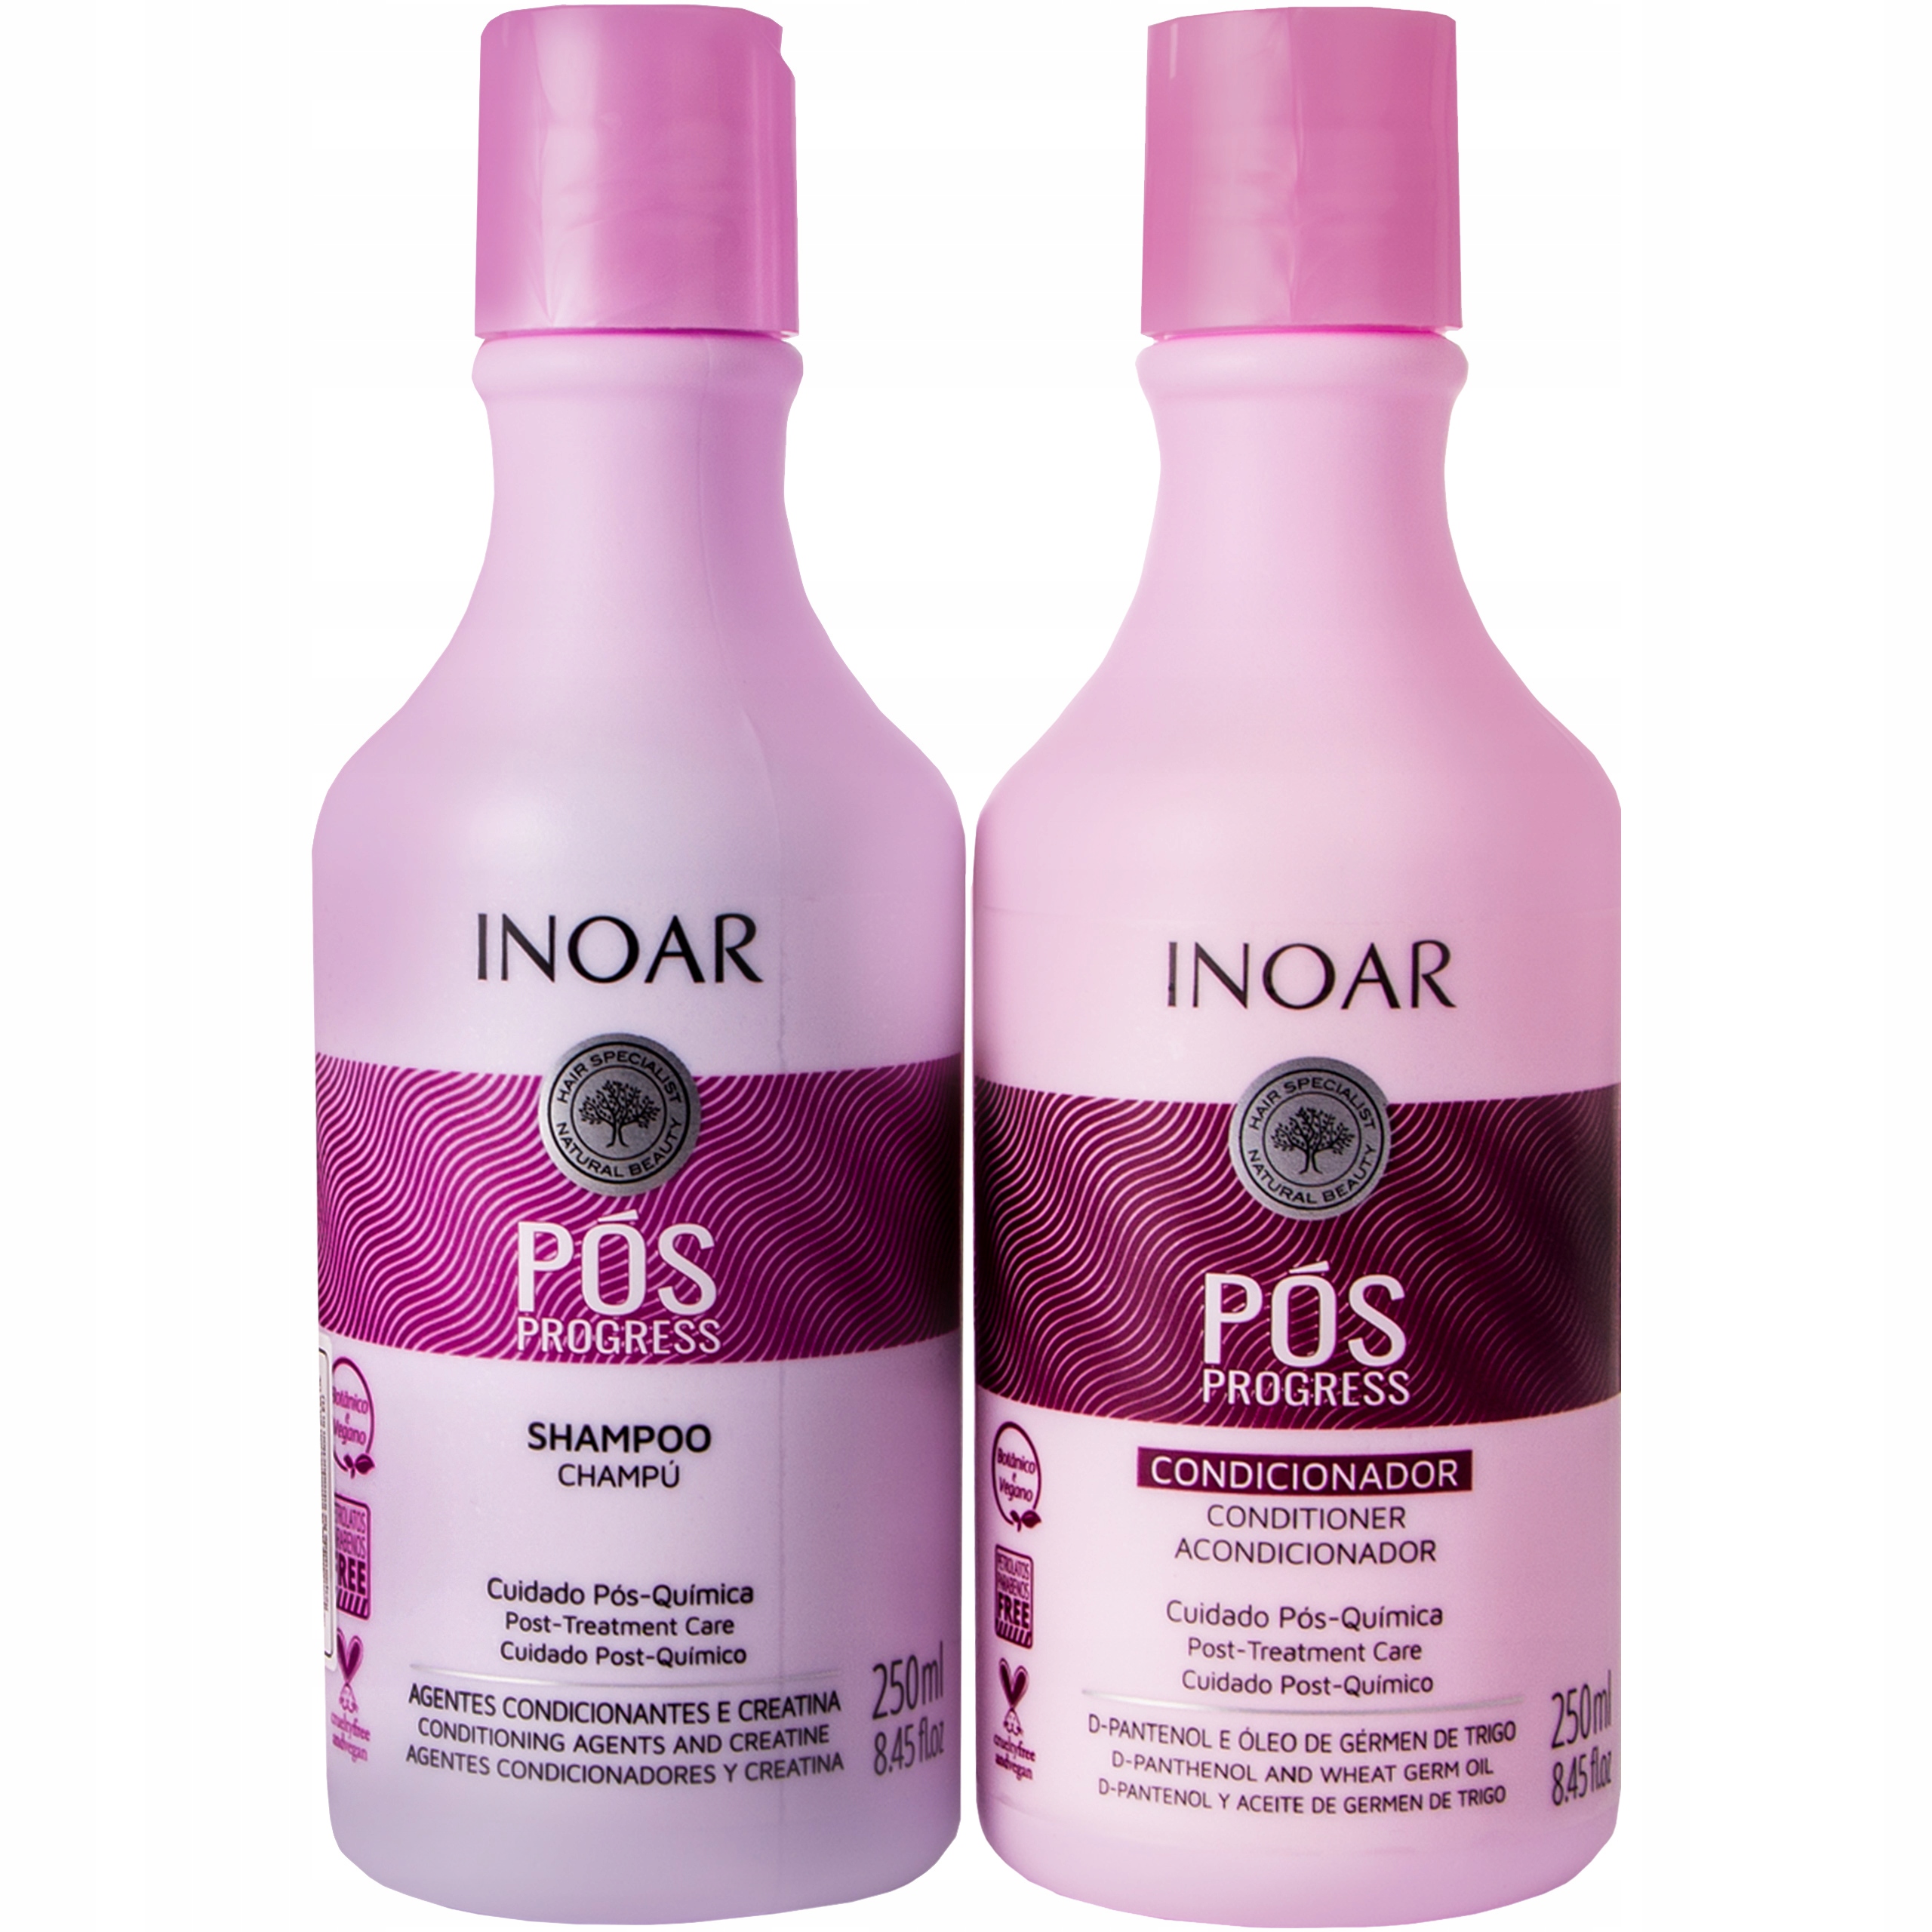 inoar szampon i odżywka po keratynowym prostowaniu allegro